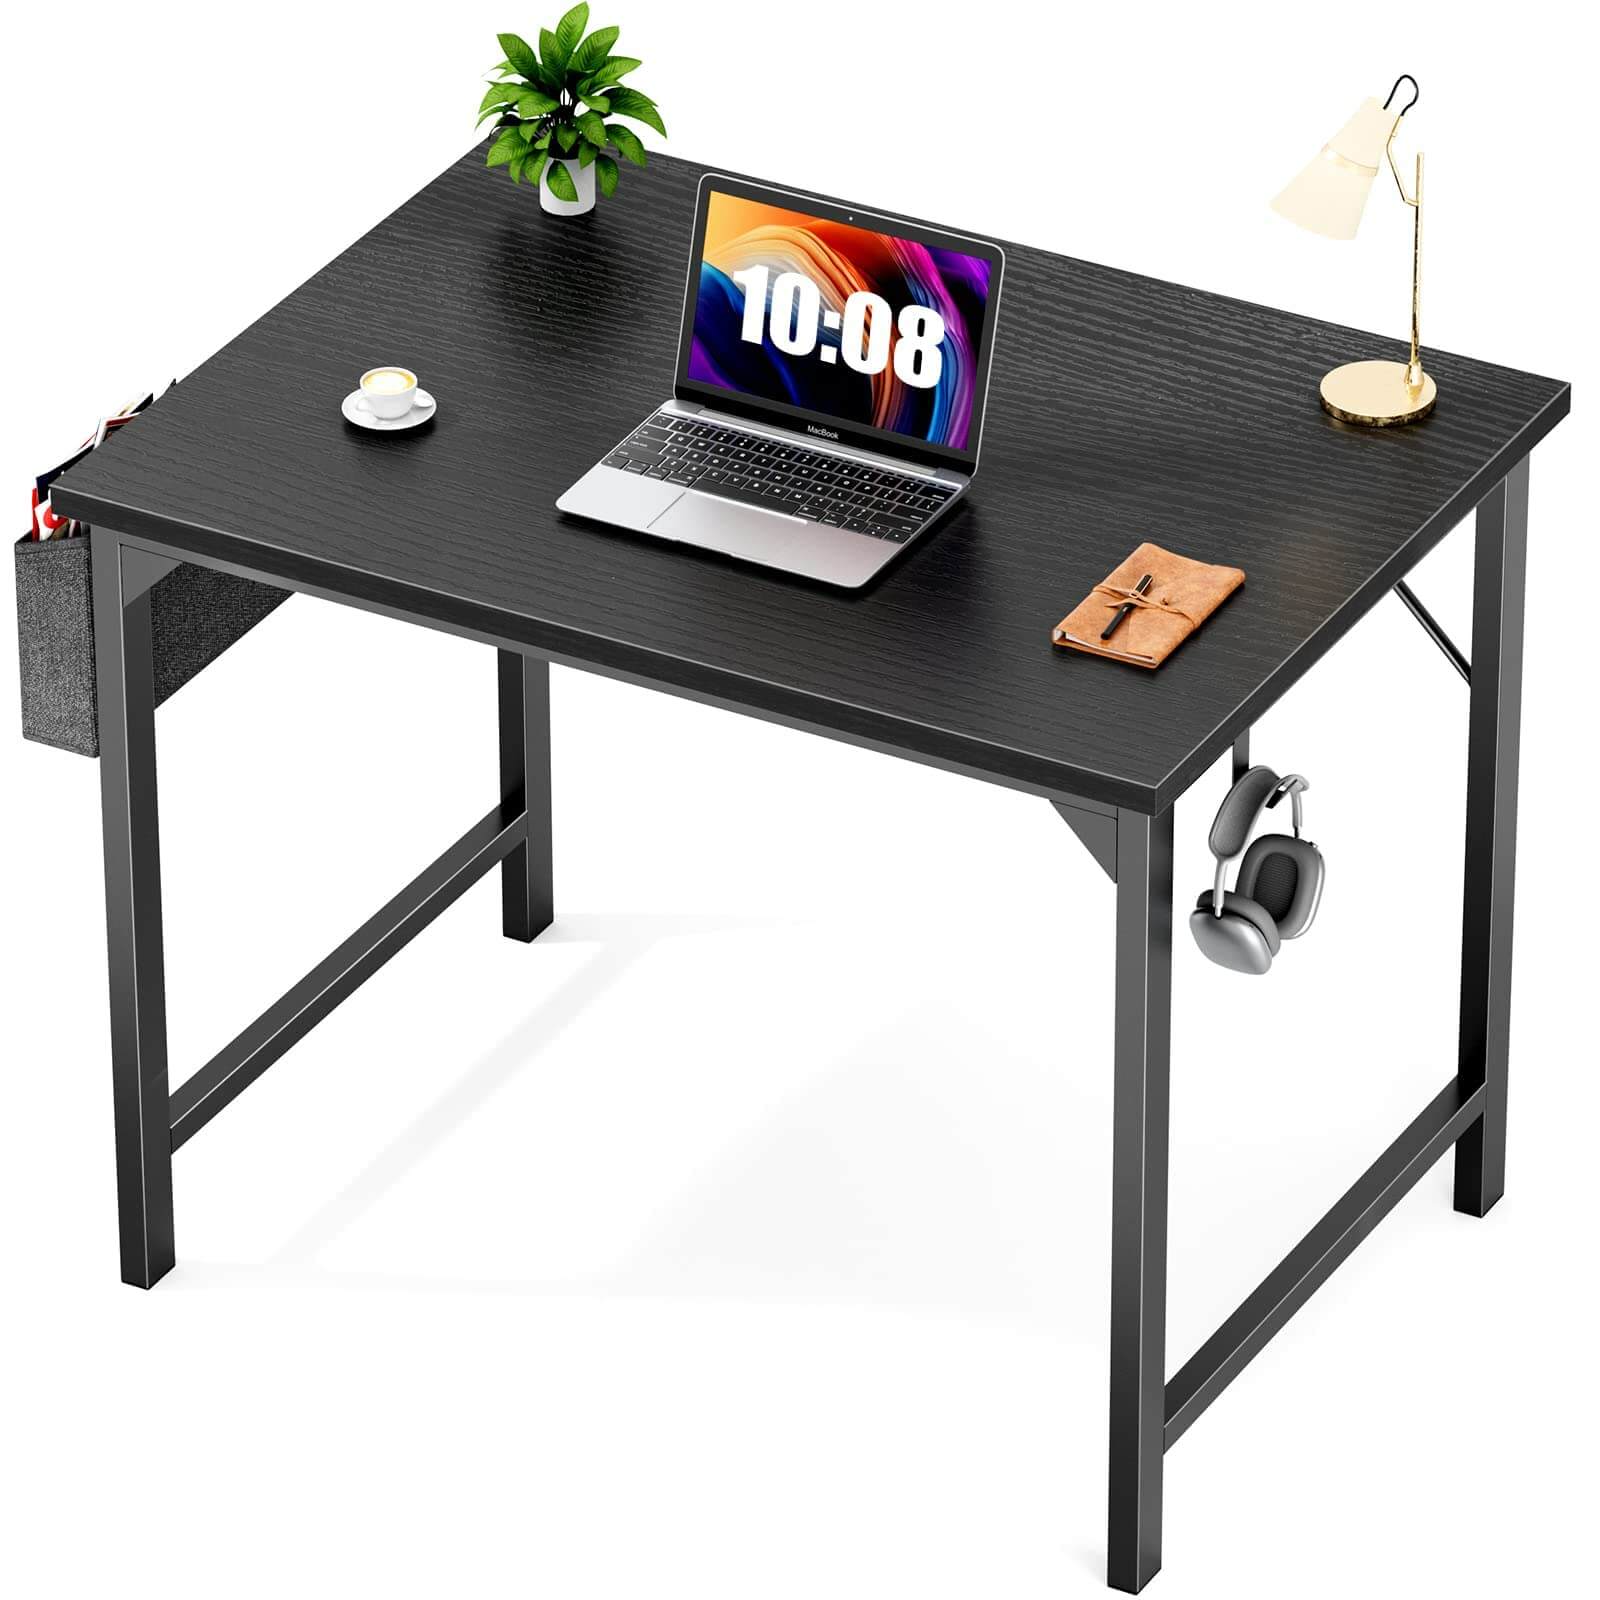 modern-wooden-office-desks#Color_Black#Size_31 Inch